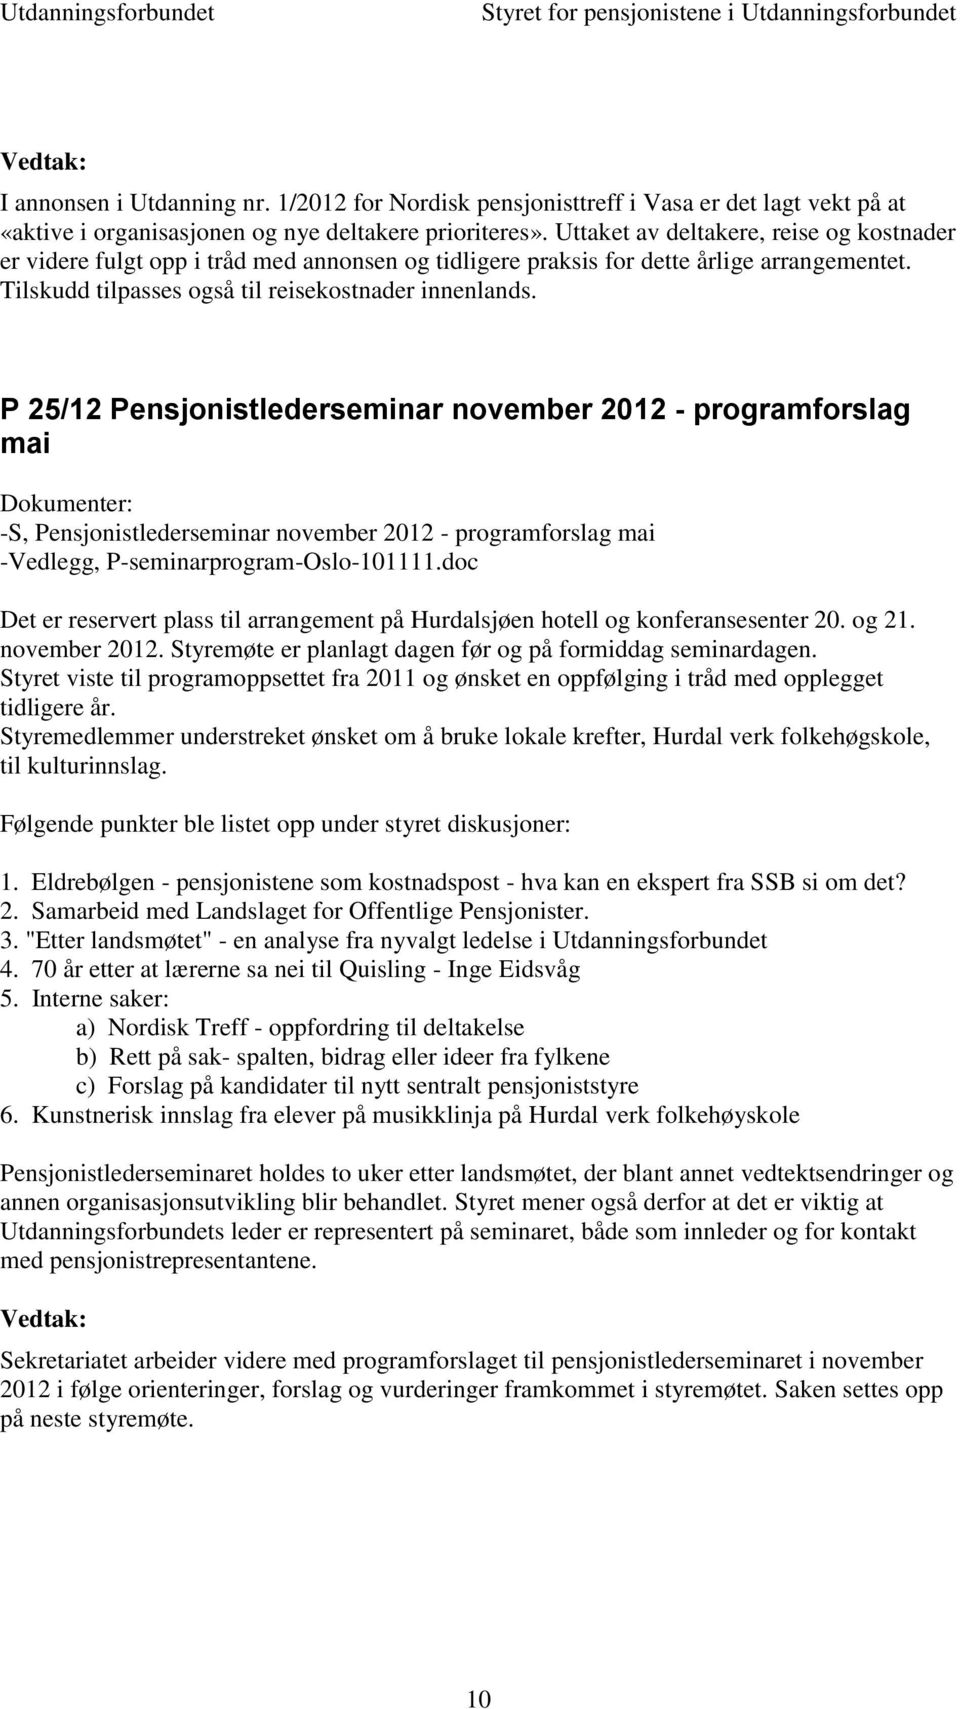 P 25/12 Pensjonistlederseminar november 2012 - programforslag mai -S, Pensjonistlederseminar november 2012 - programforslag mai -Vedlegg, P-seminarprogram-Oslo-101111.